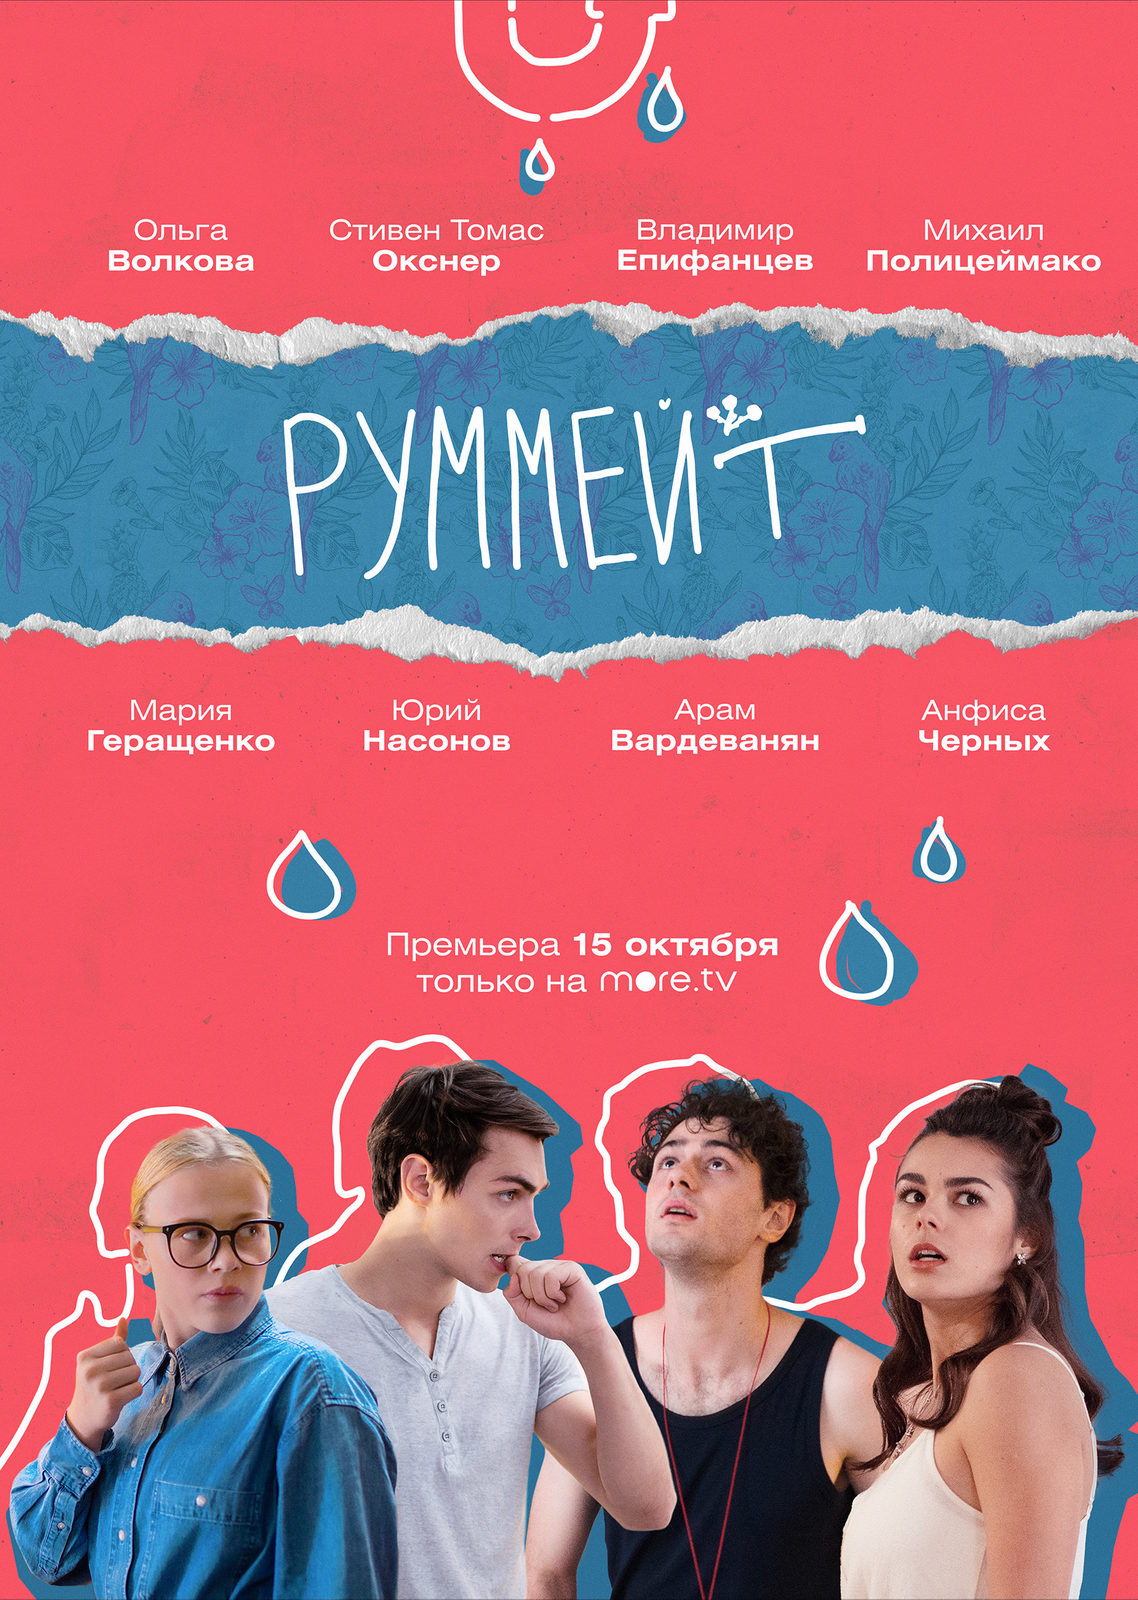 Премьера романтической комедии «Руммейт» с Анфисой Черных состоится в середине октября